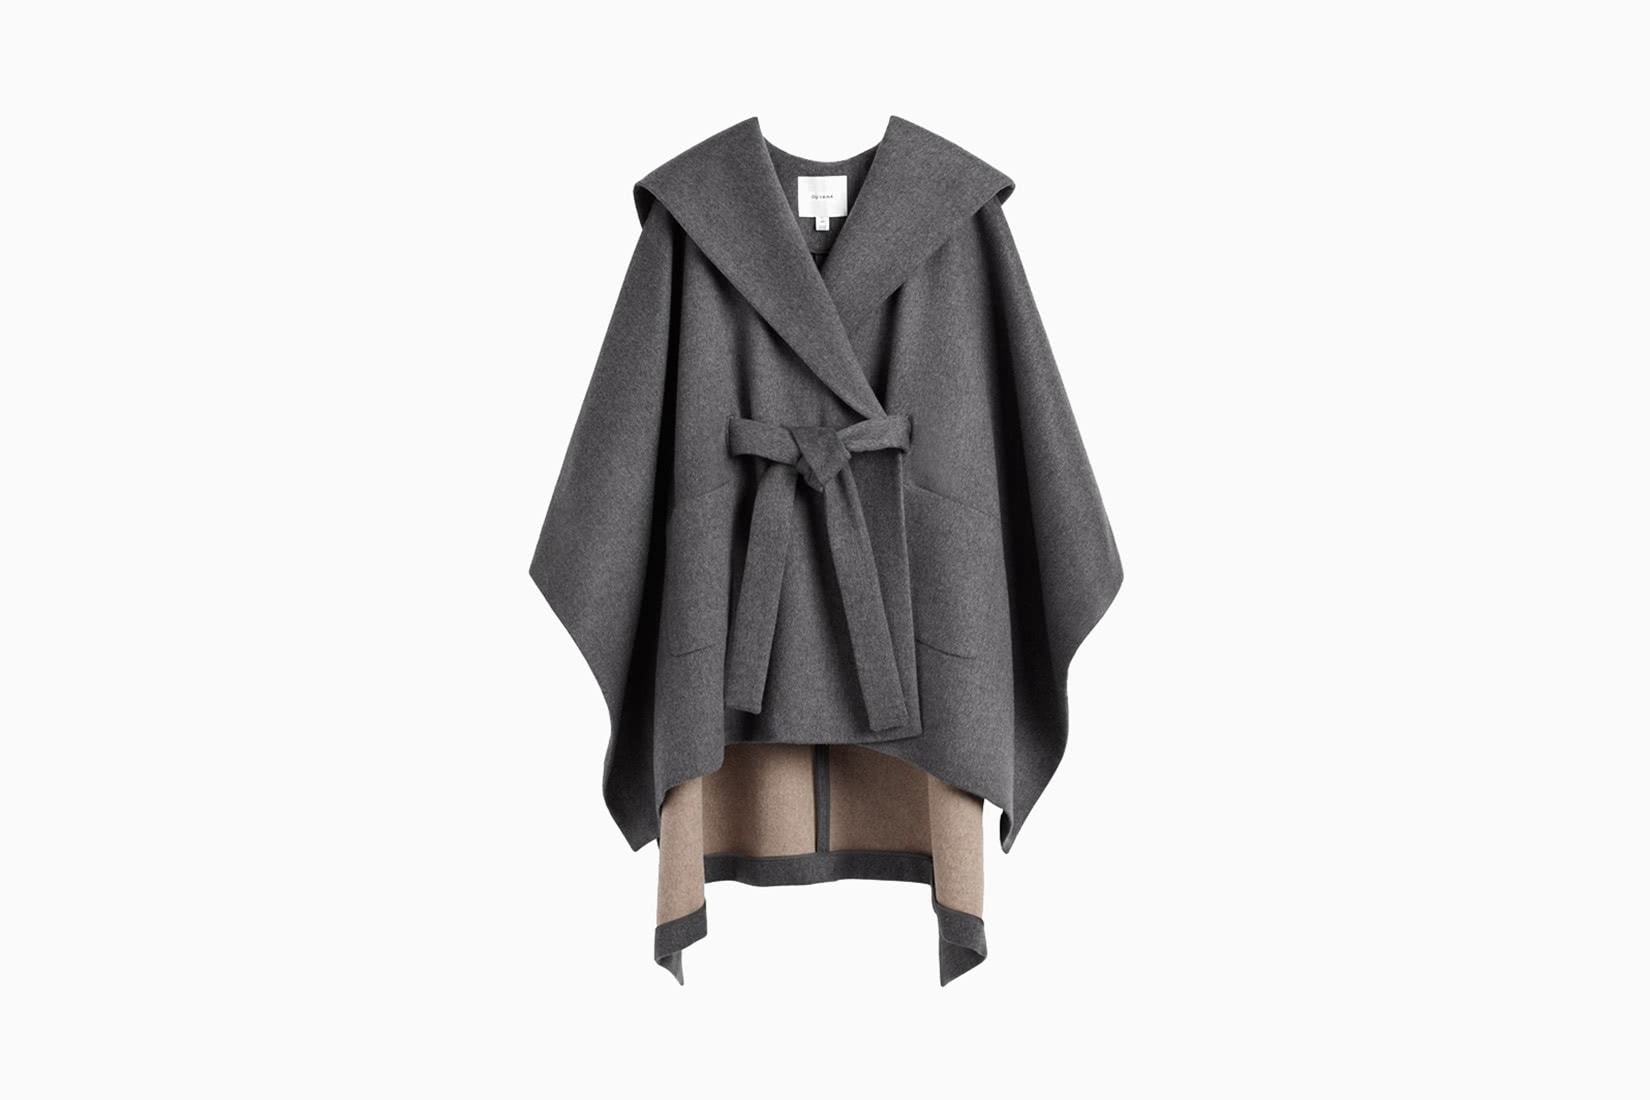 Les meilleurs manteaux d'hiver pour les femmes - cuyana hooded cape review - Luxe Digital